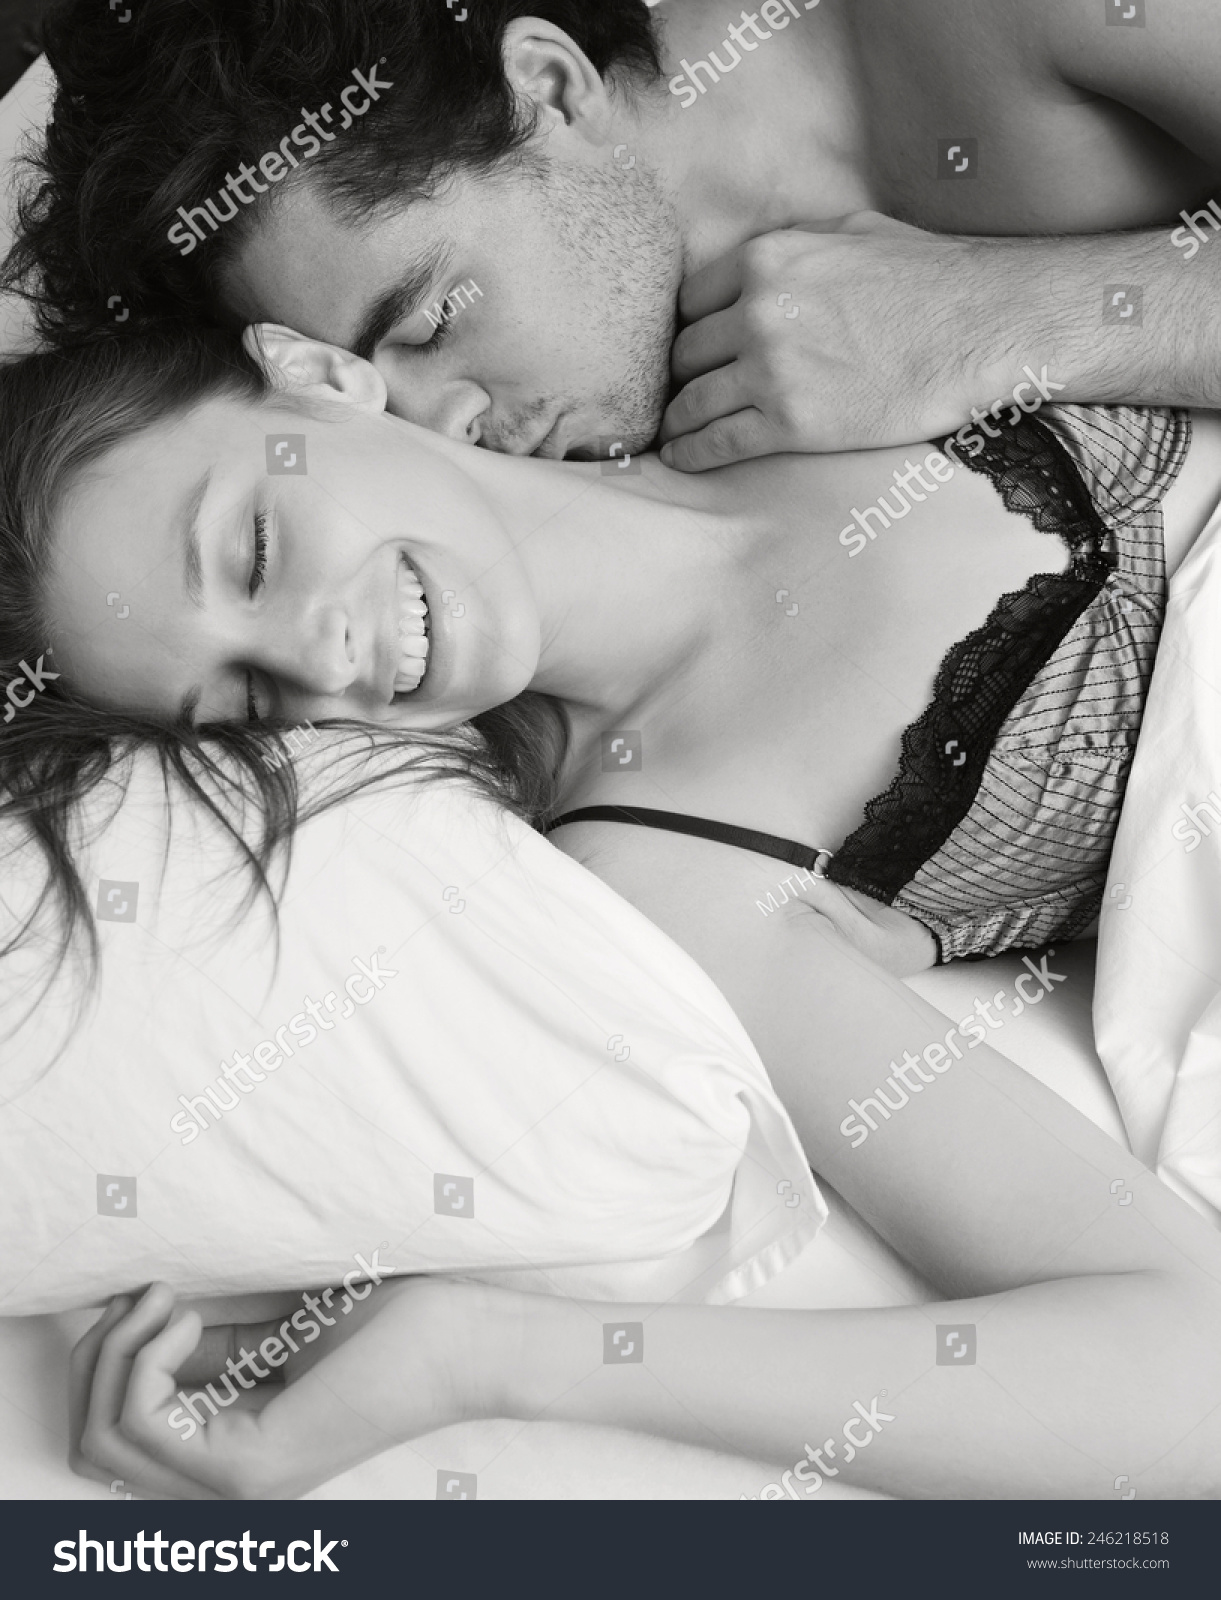 Мужчина лежит на женщине и целует